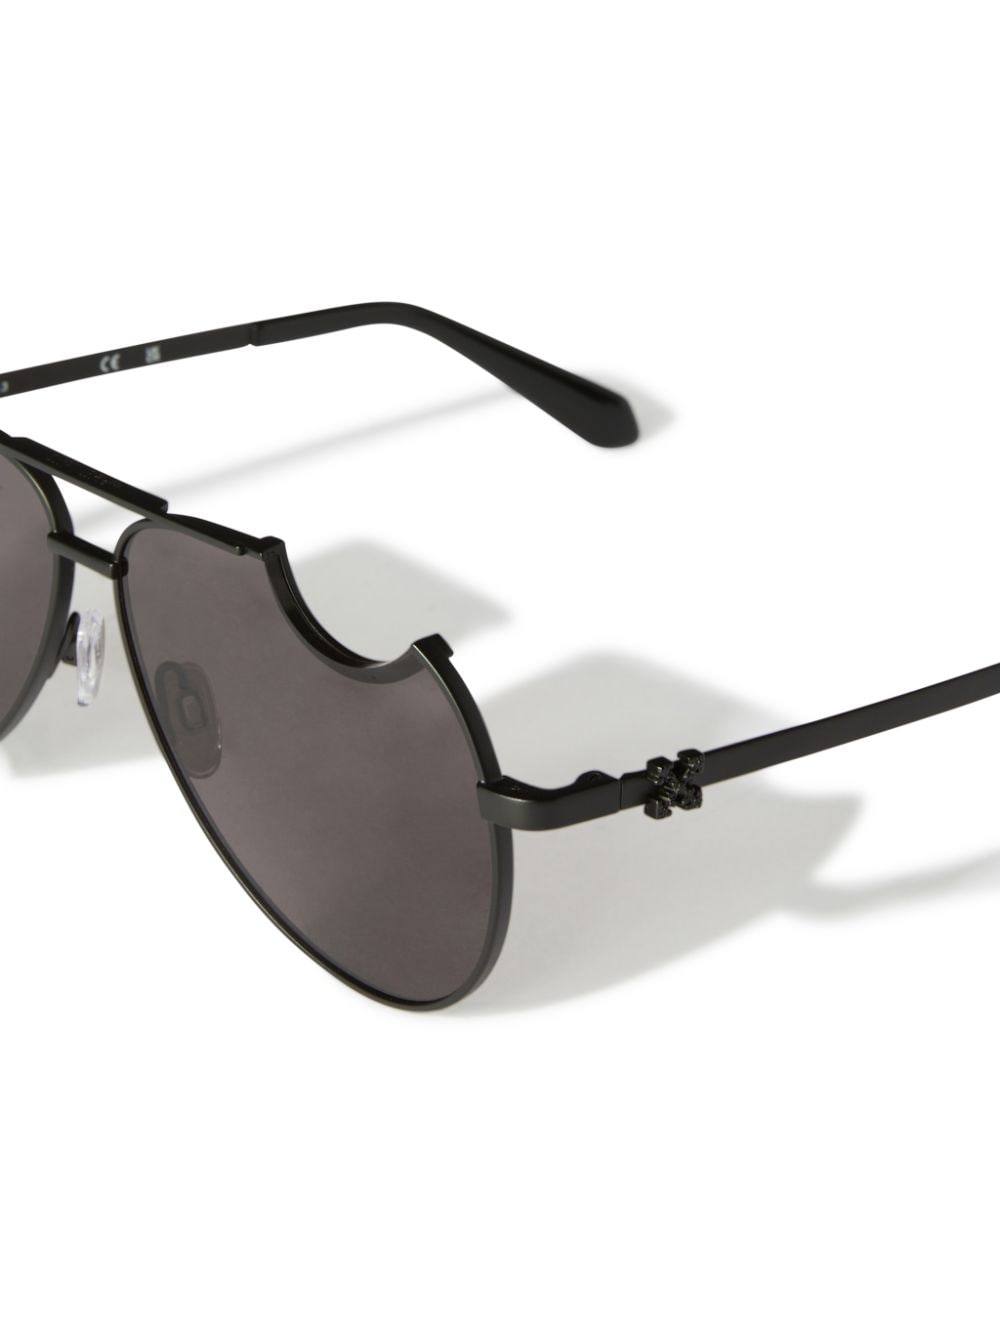 Off-White Dallas (Black) Sunglasses - Black